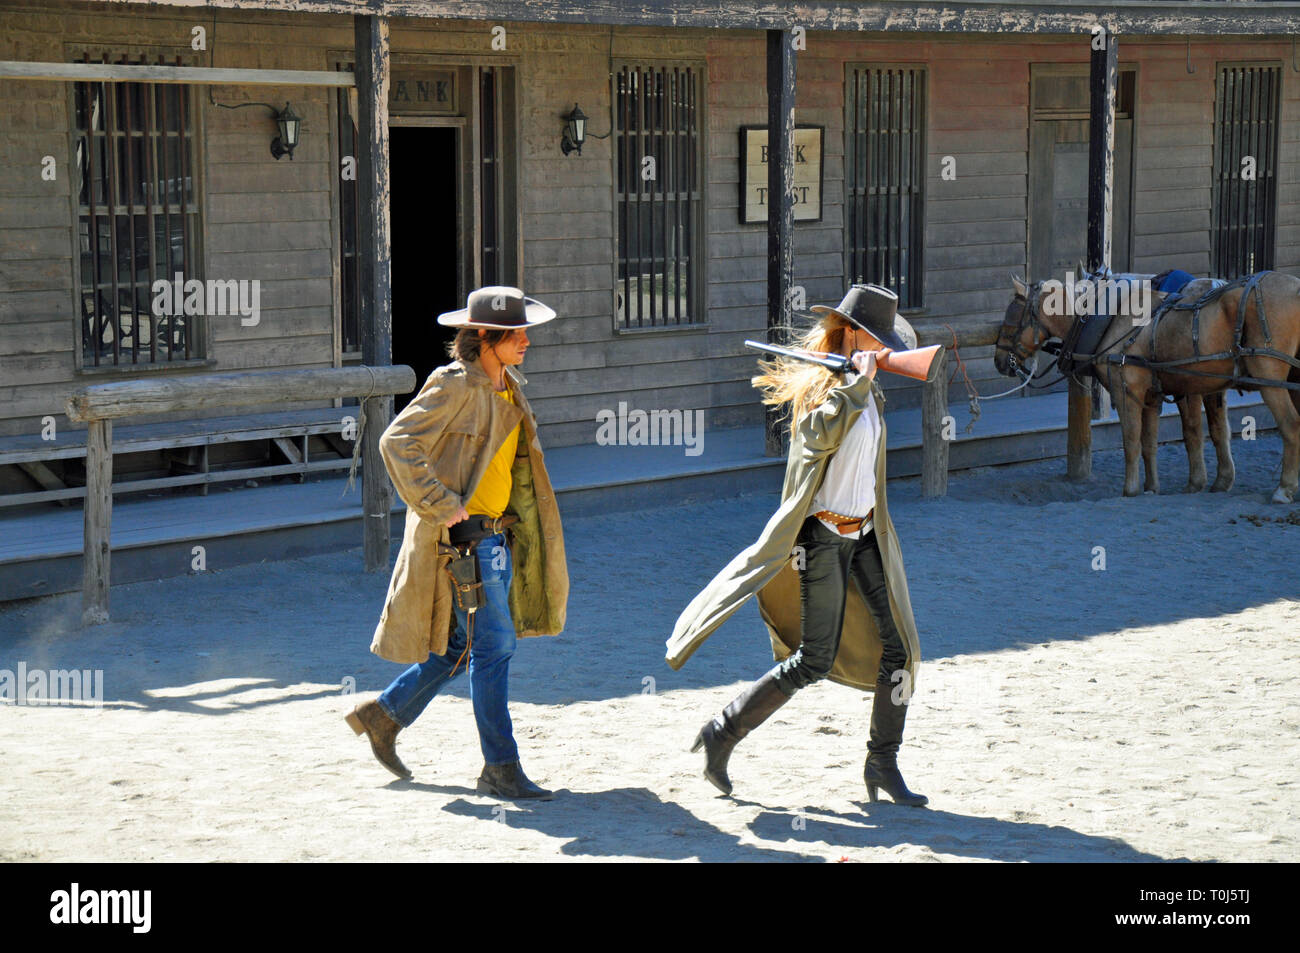 Acteurs Cowboy adopter de nouveau une scène de fusillade pour les touristes sur un ancien film sur l'ouest de Tabernas, Almeria, Espagne. Banque D'Images